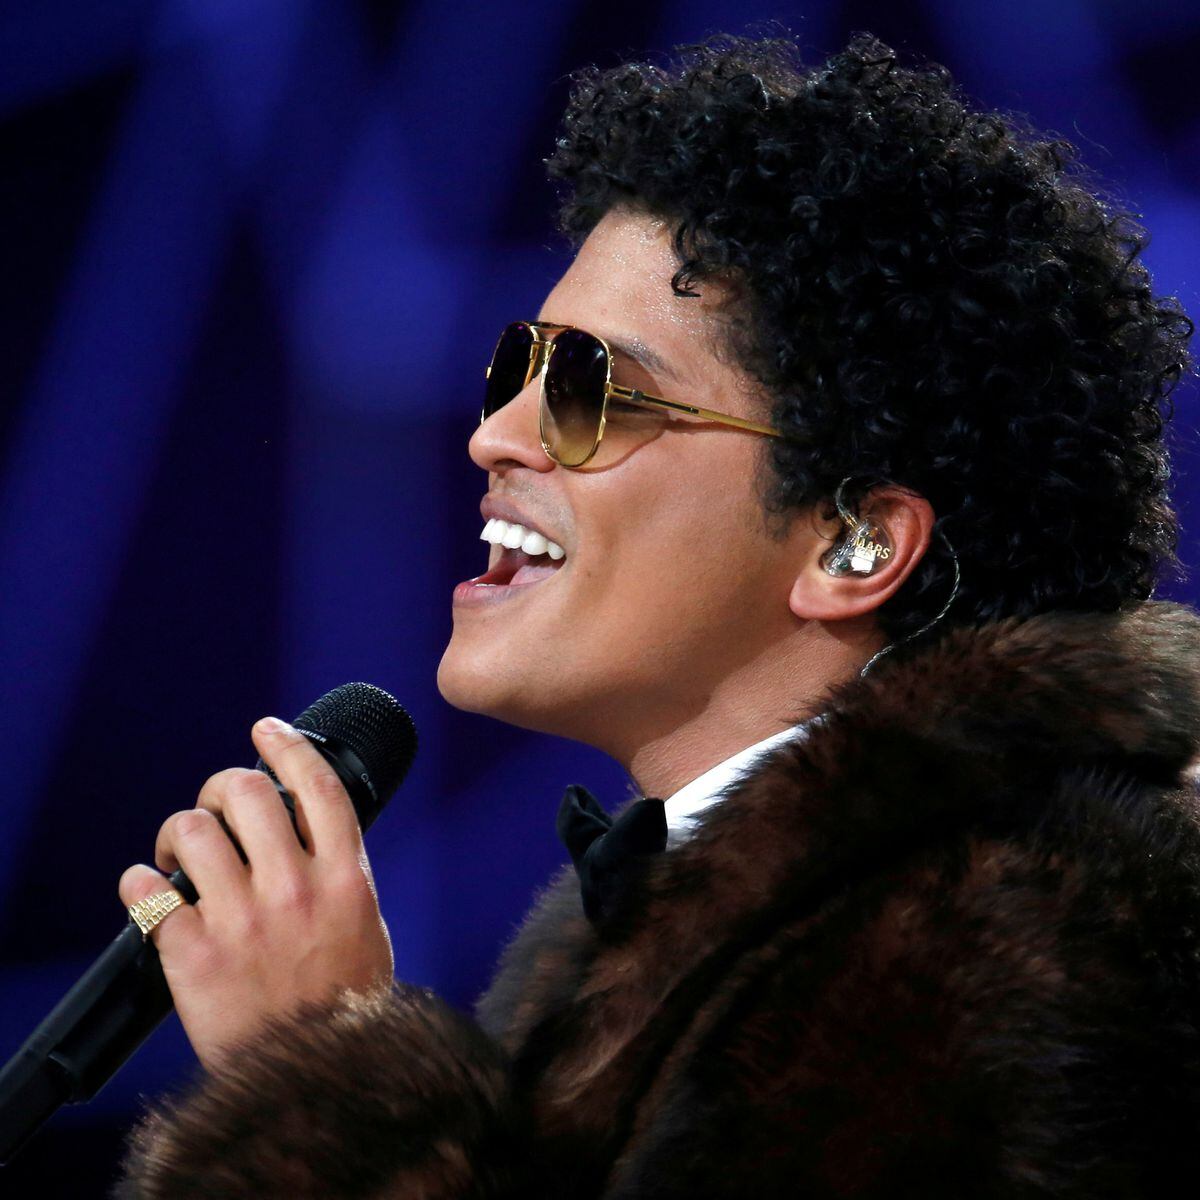 Aos 6 anos, Bruno Mars aparecia na MTV por imitação de Elvis Presley